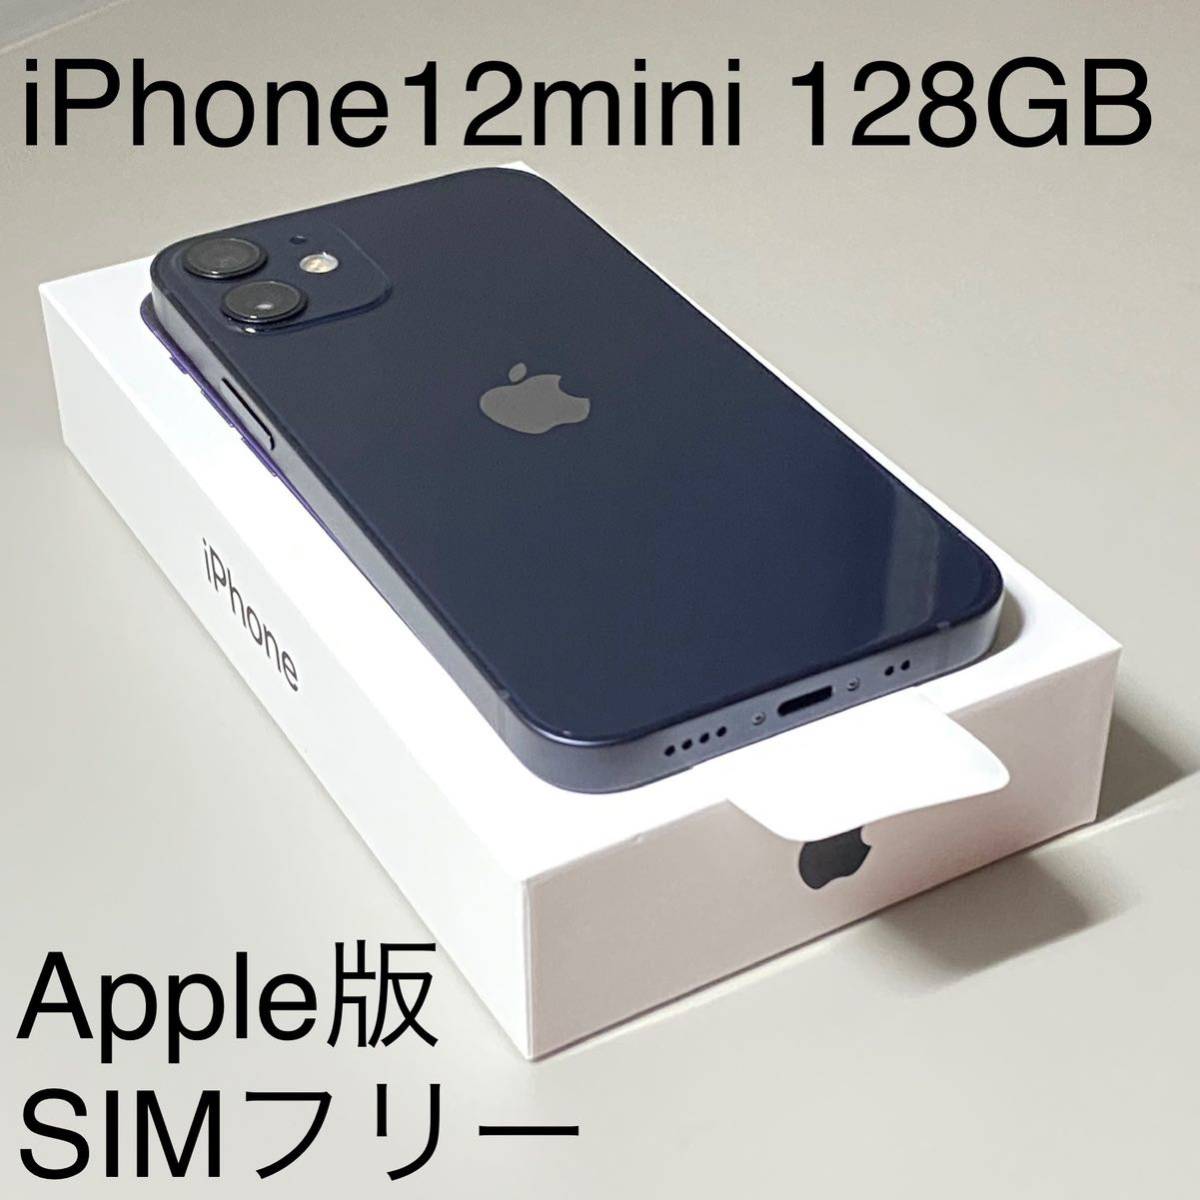 iPhone 12 mini 128GB Apple版 SIMフリー 新品 未使用 ブラック